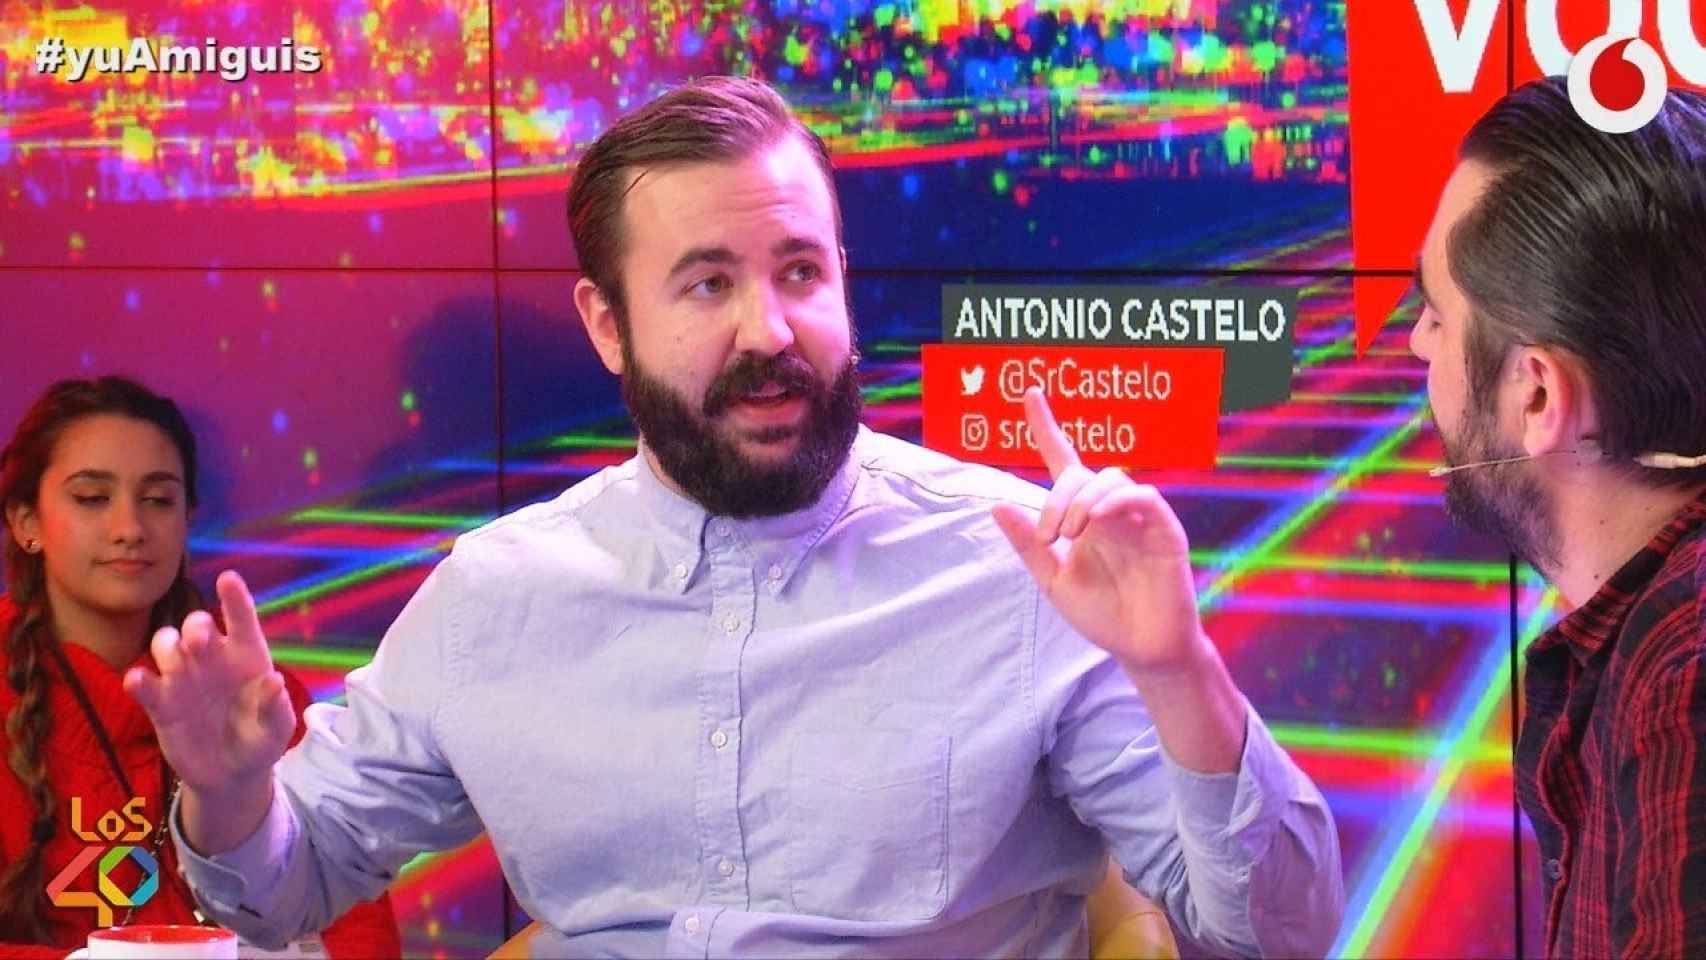 Antonio Castelo.